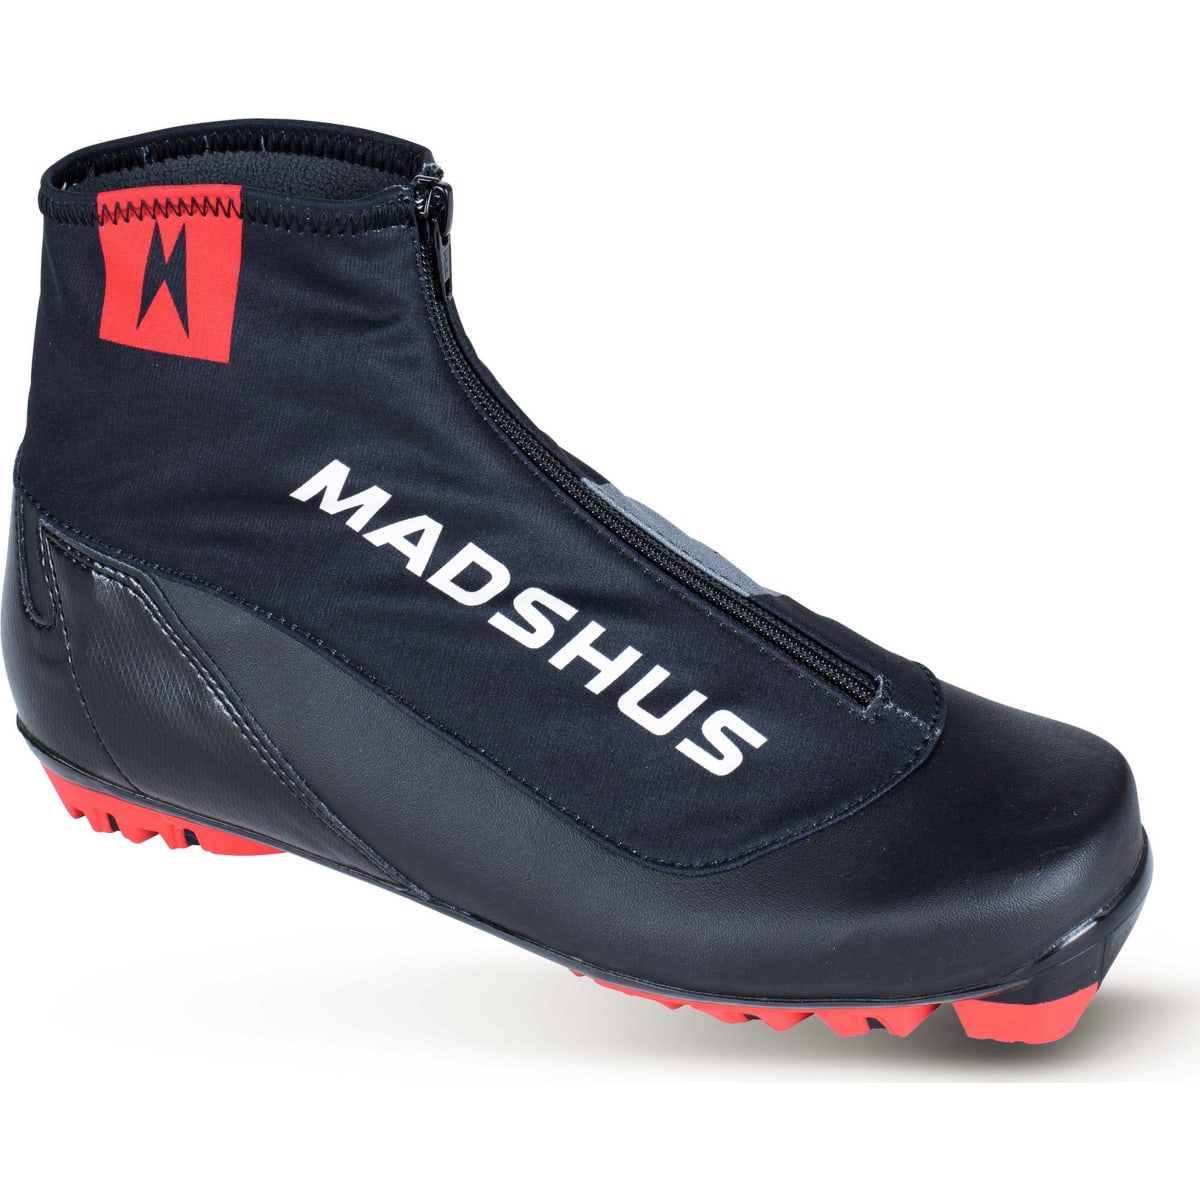 Madshus Endurace Classic Boots